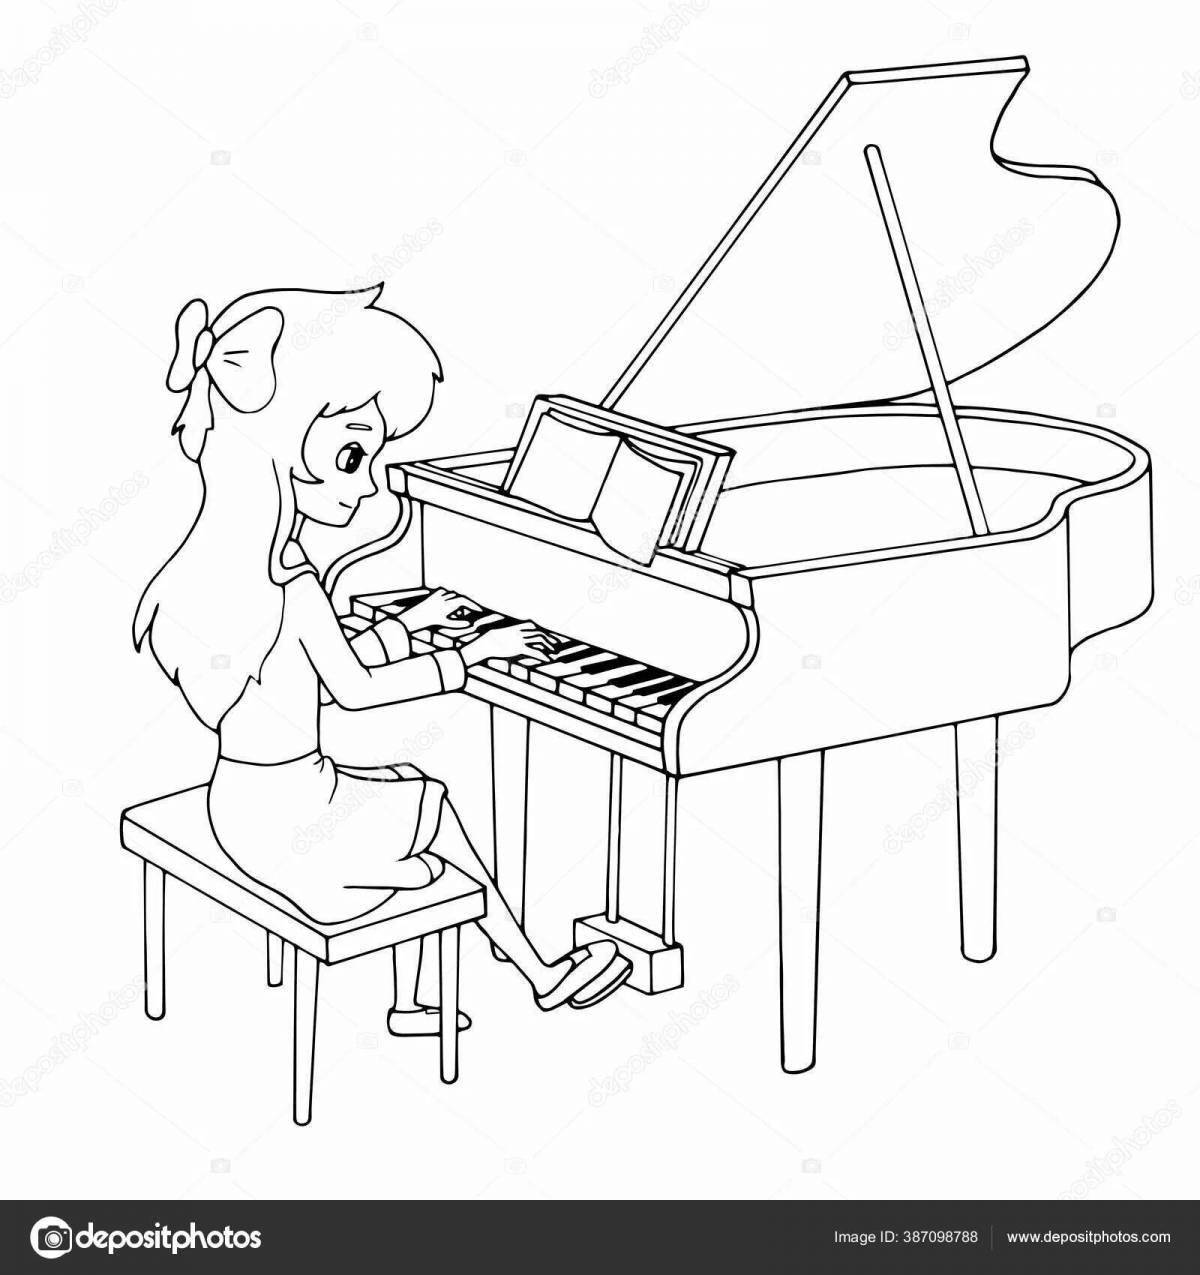 Children's piano #3